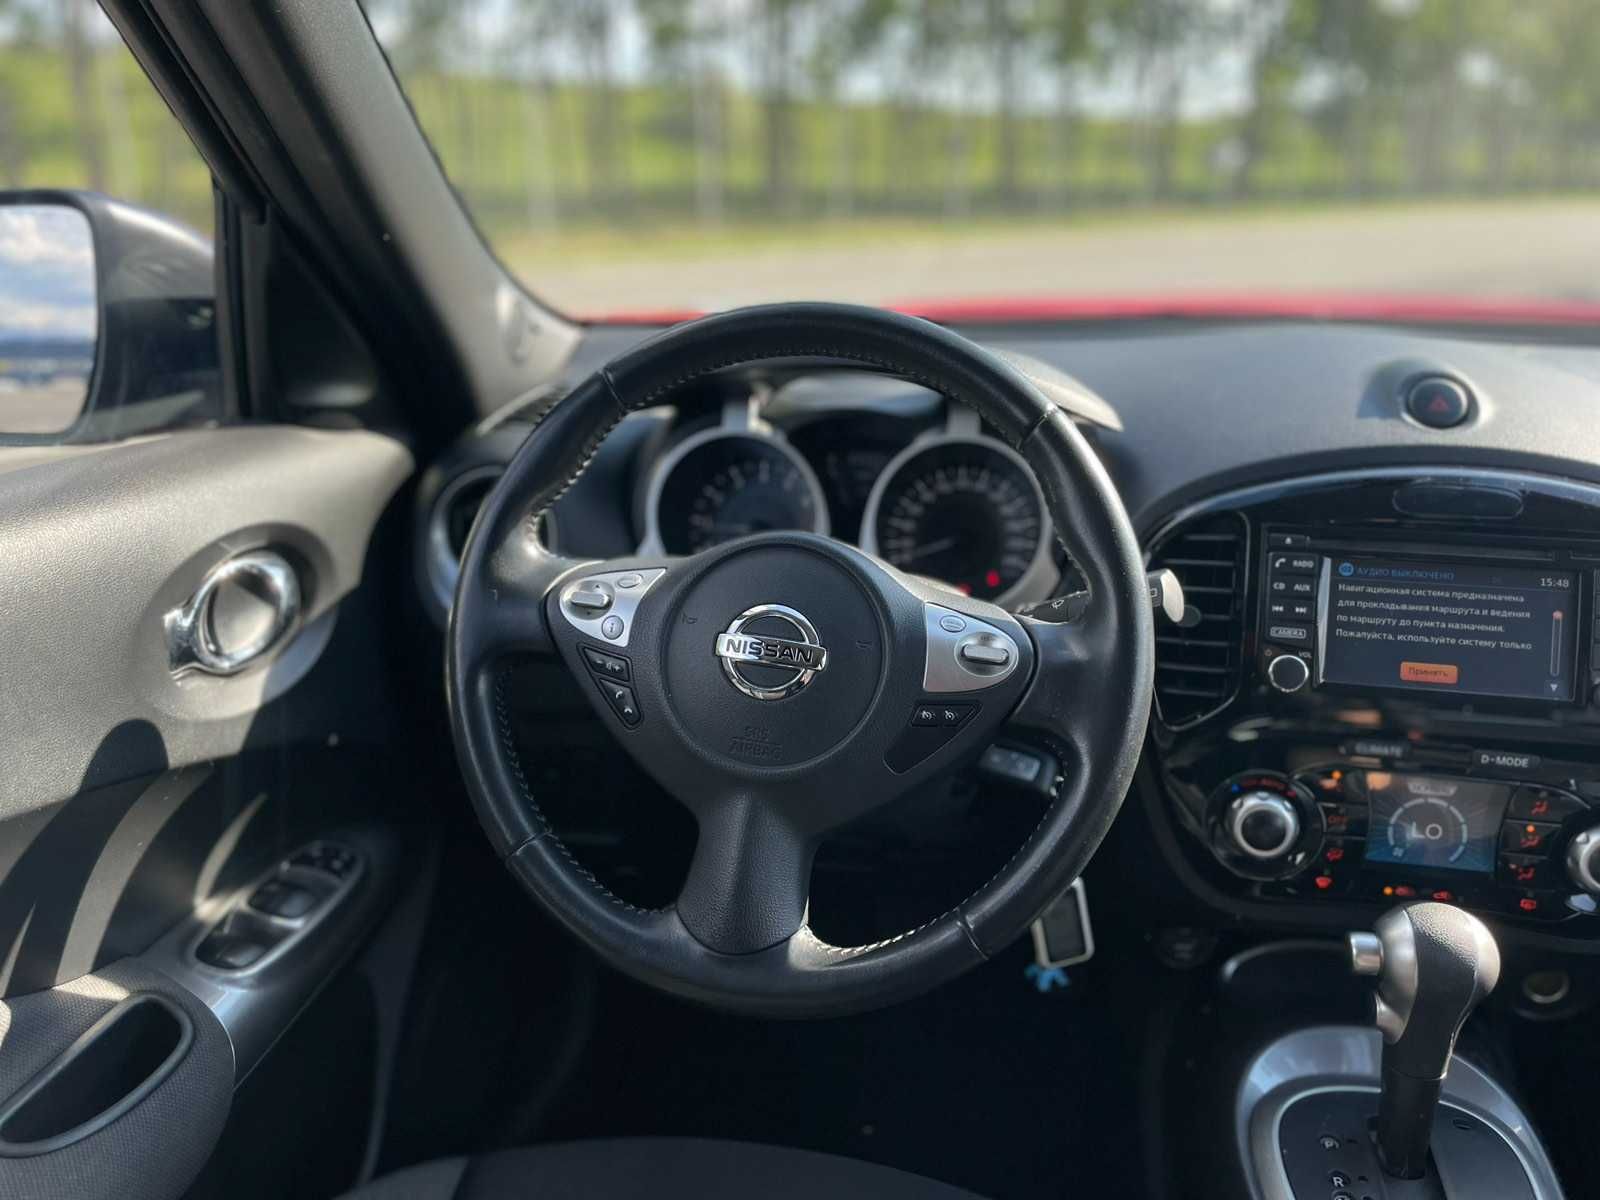 Продам Nissan Juke 2018г., 1,6 бензин автомат /Обмен/Рассрочка